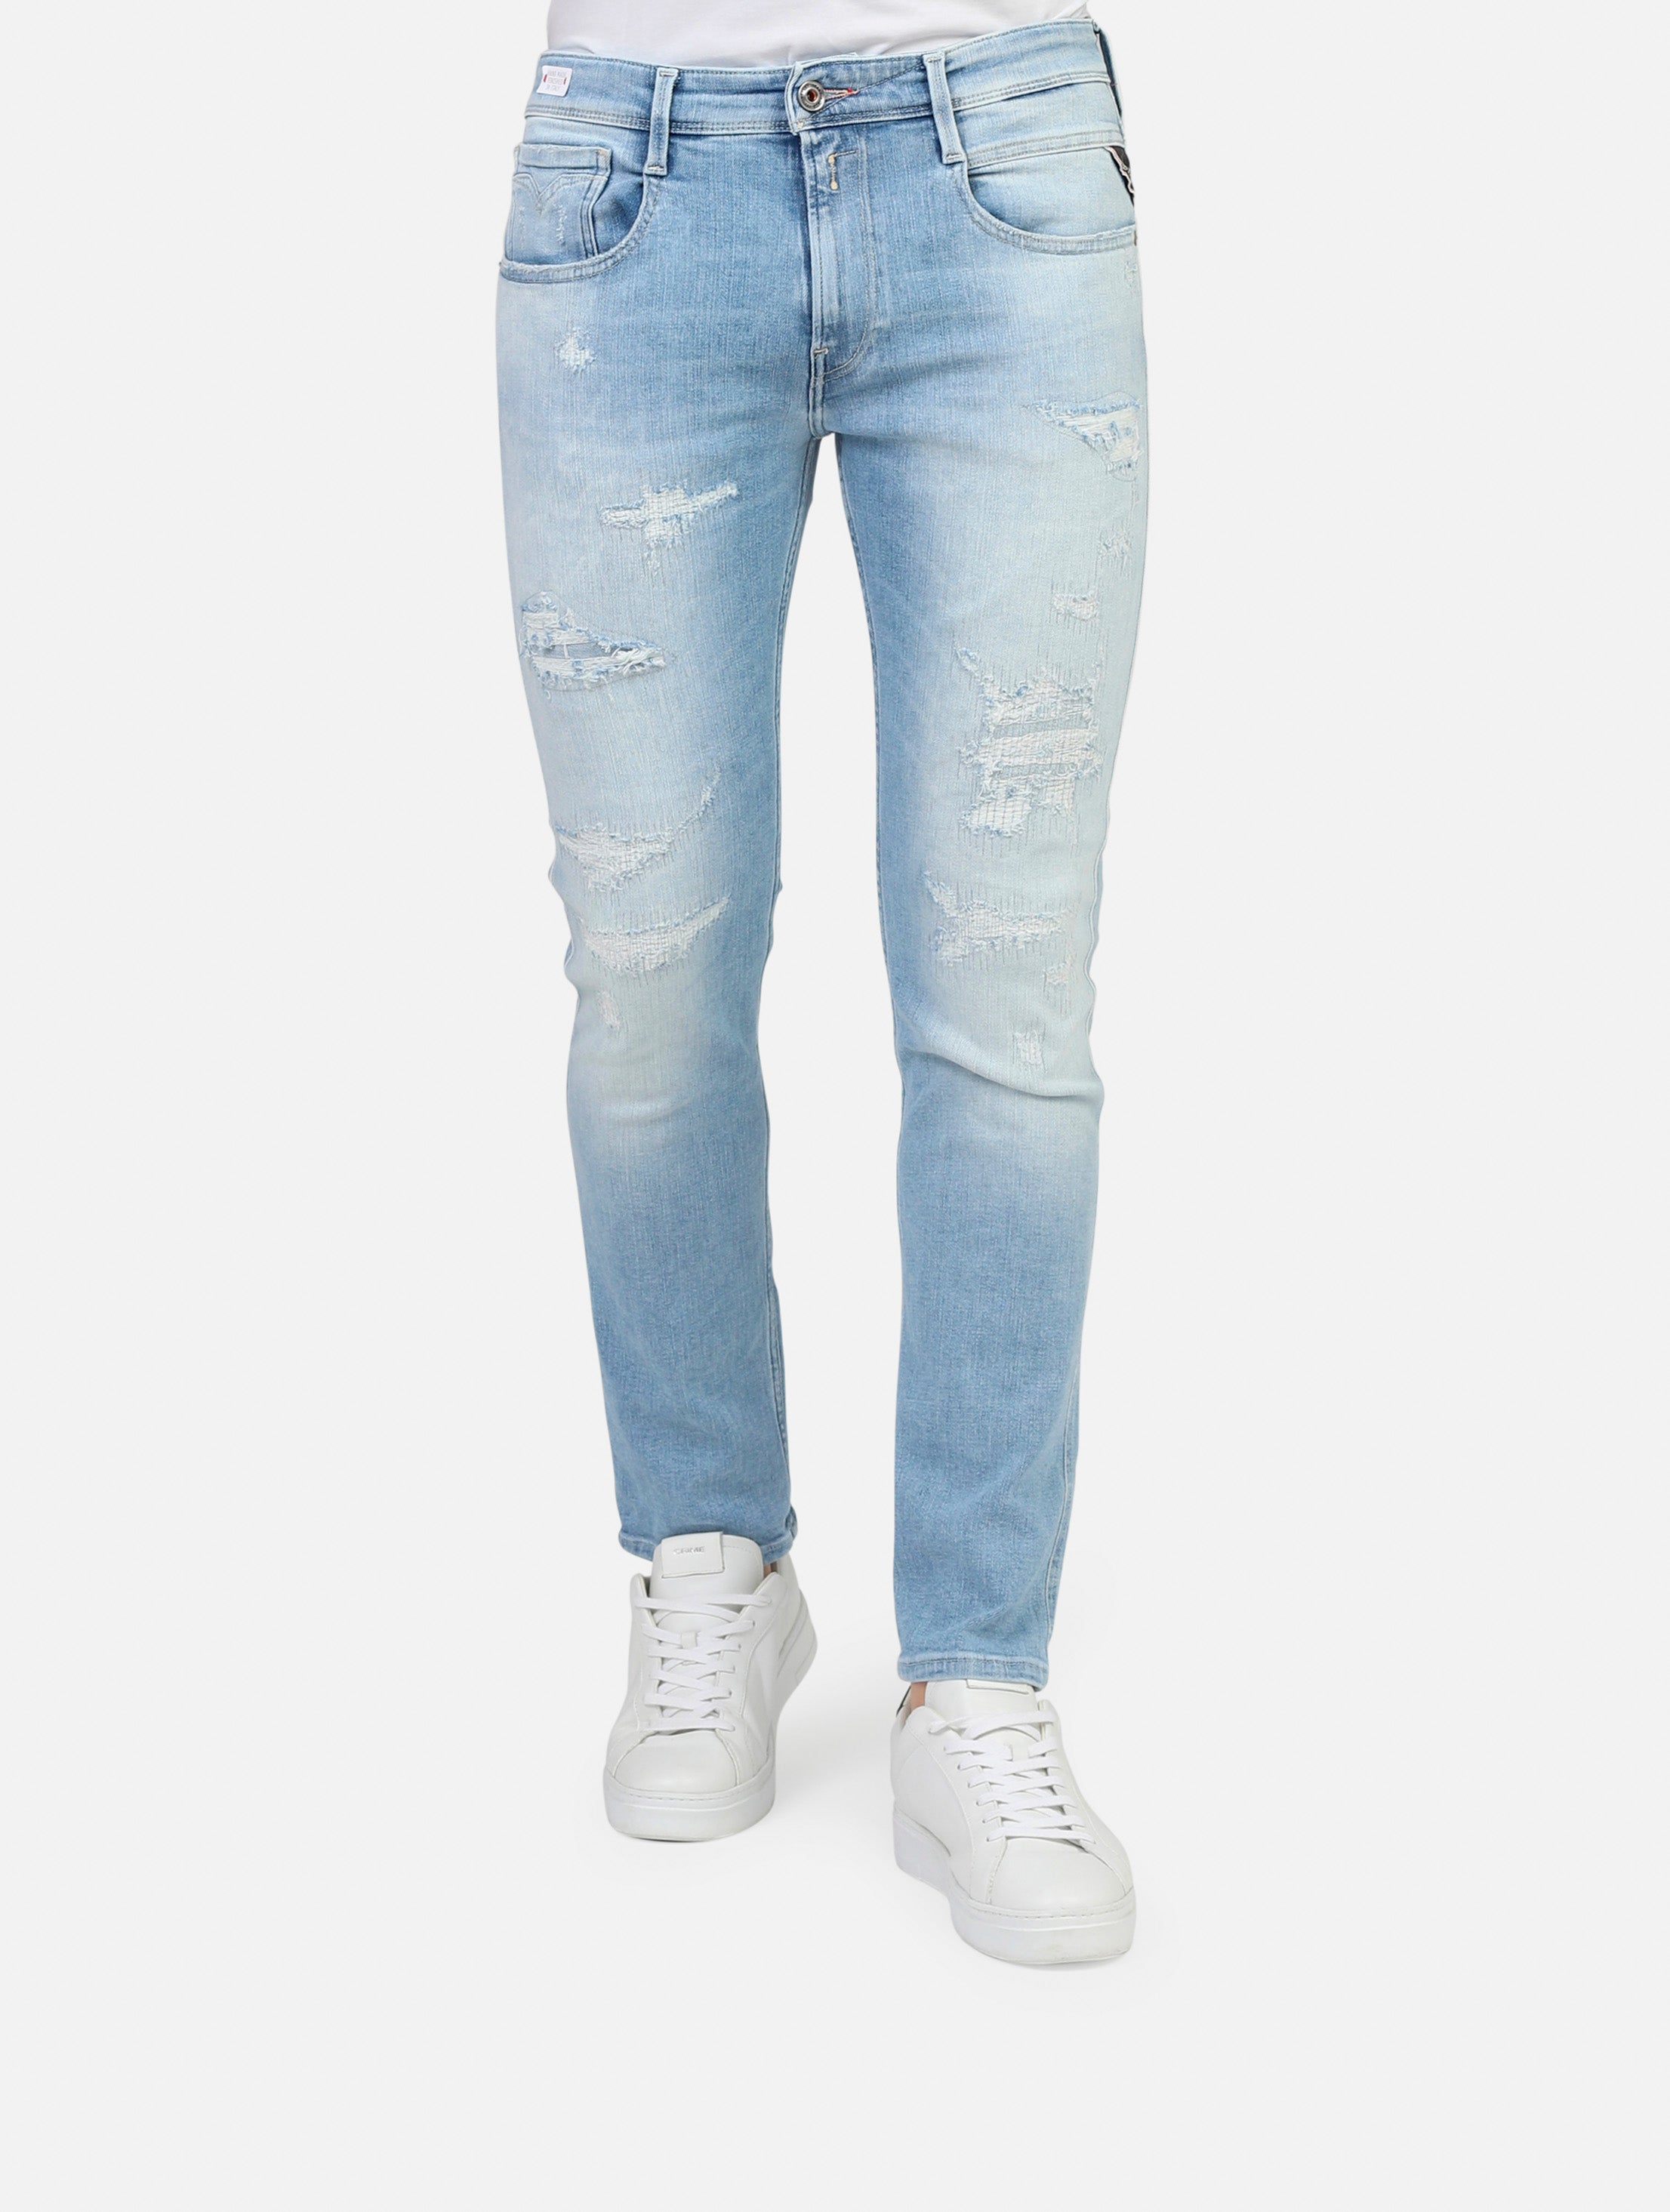 Jeans replay  jeans chiaro uomo 